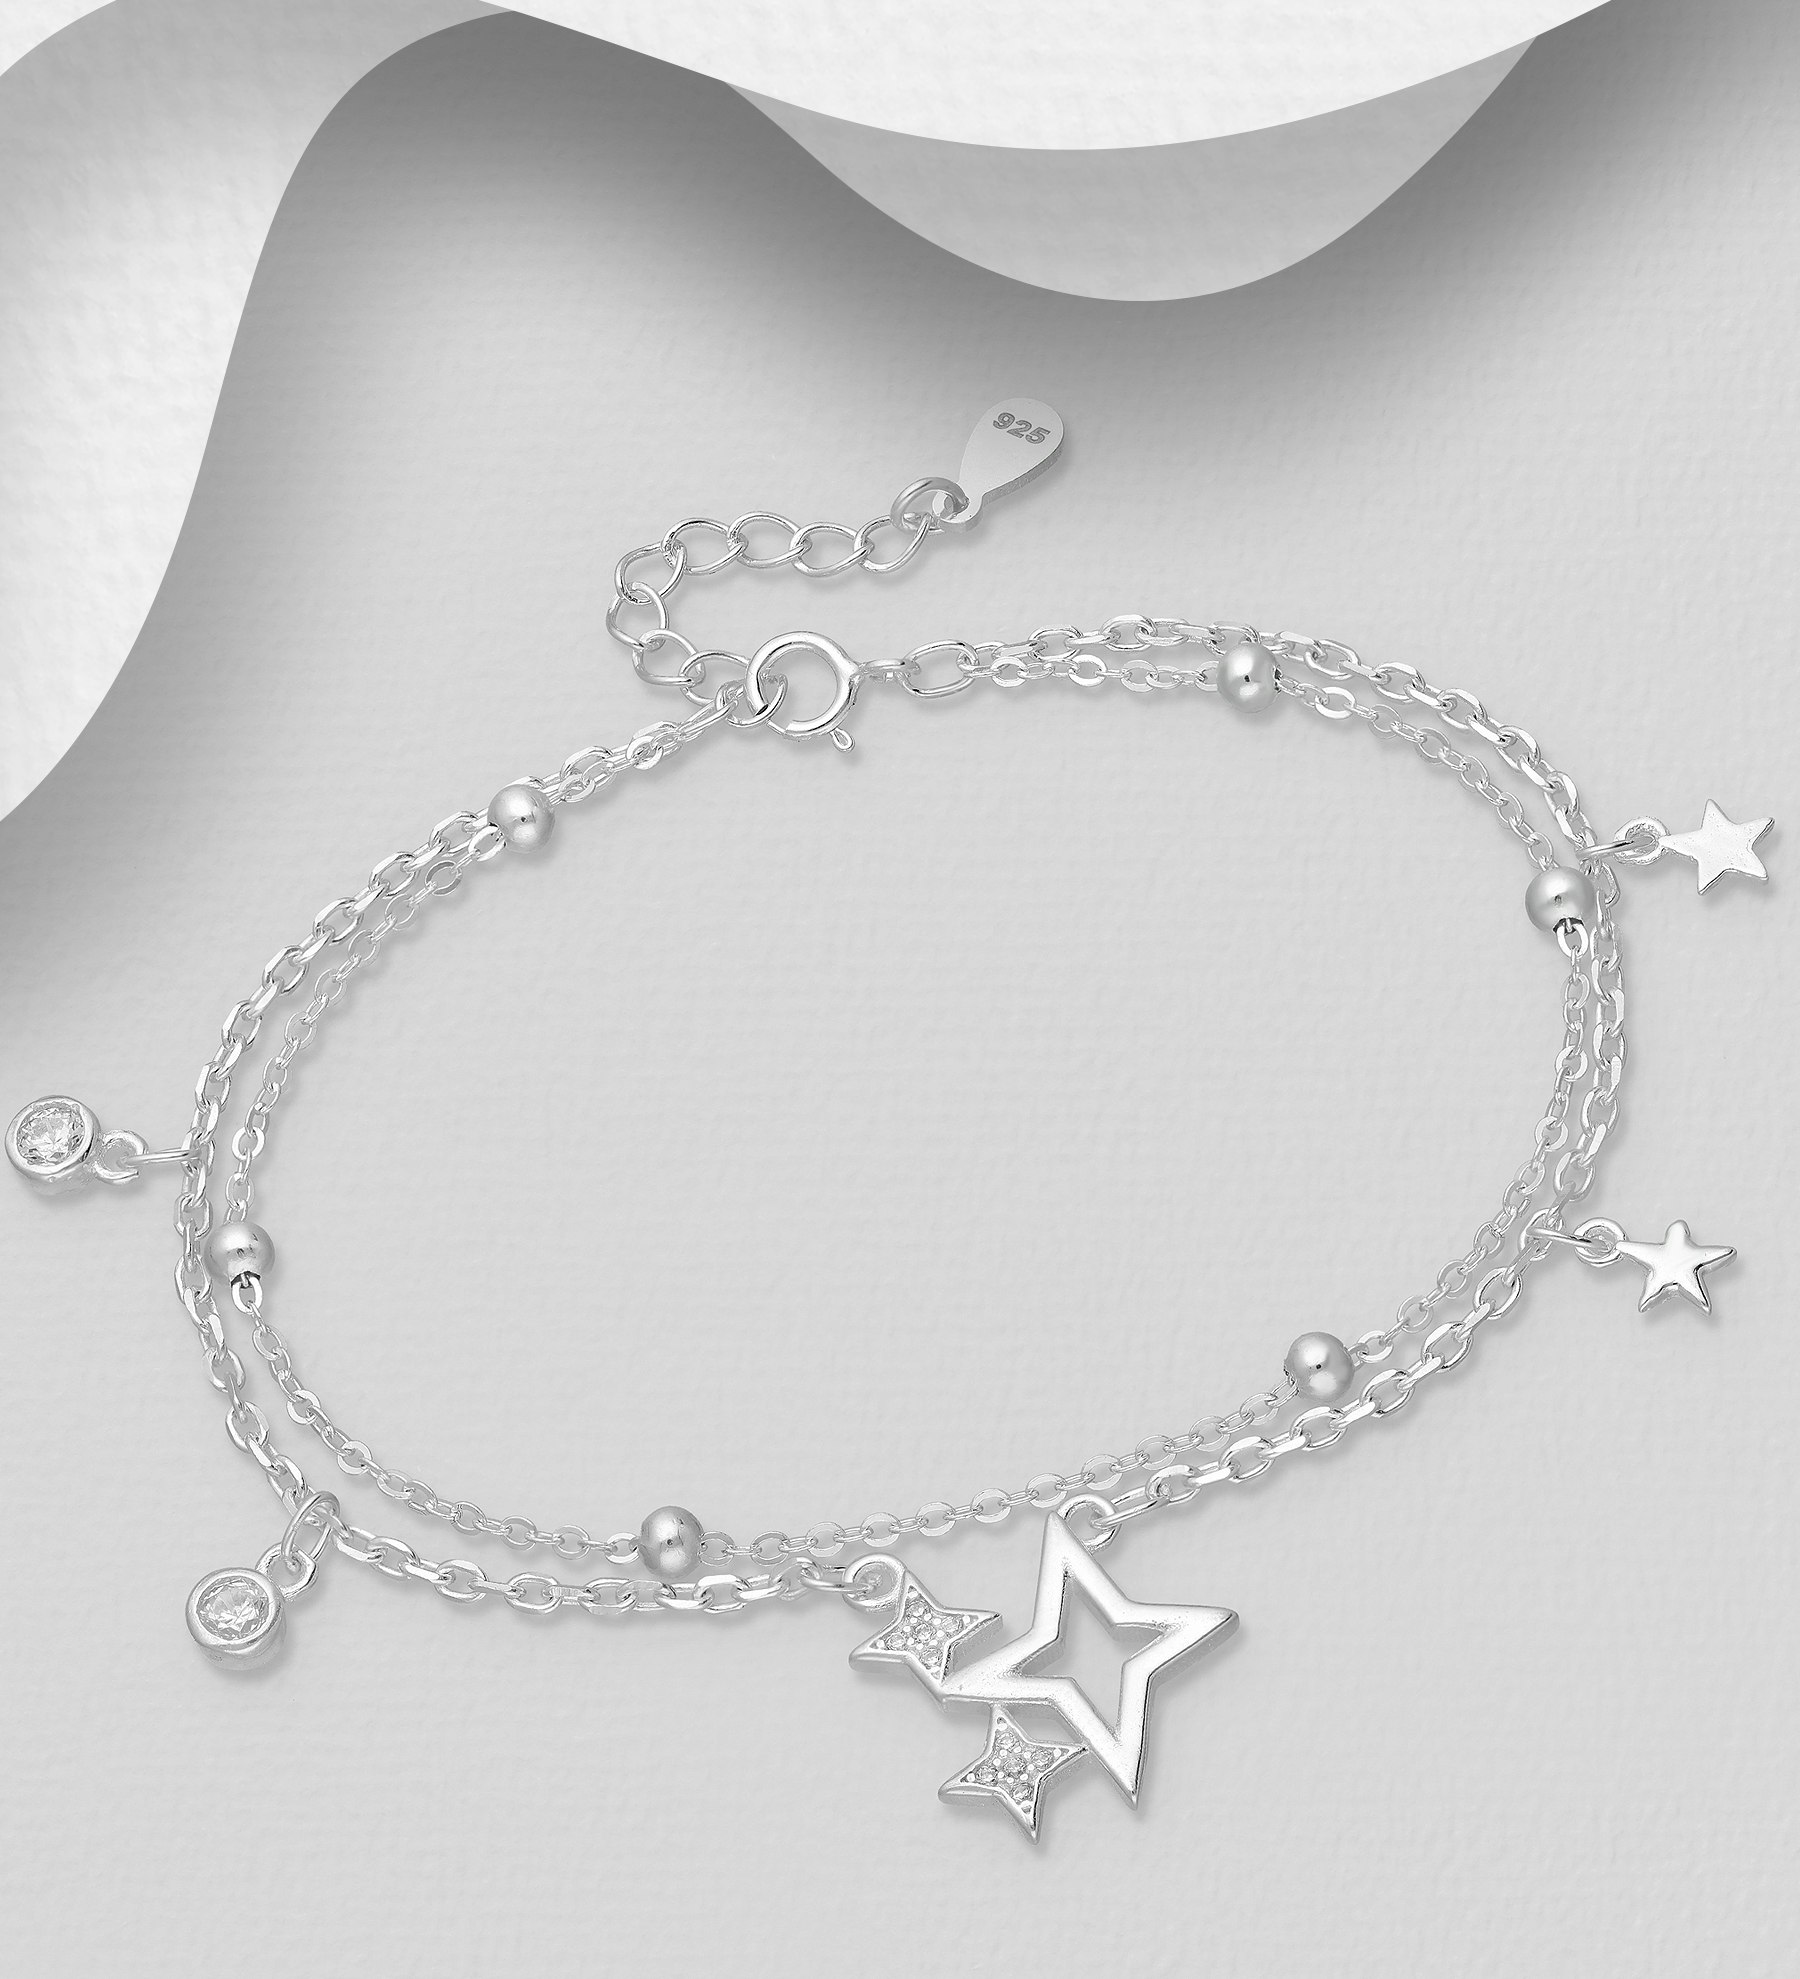 Silverarmband tvåradigt med fina stjärnor & runda stenar - stilfullt armband till tjej/ dam i äkta 925 sterling silver